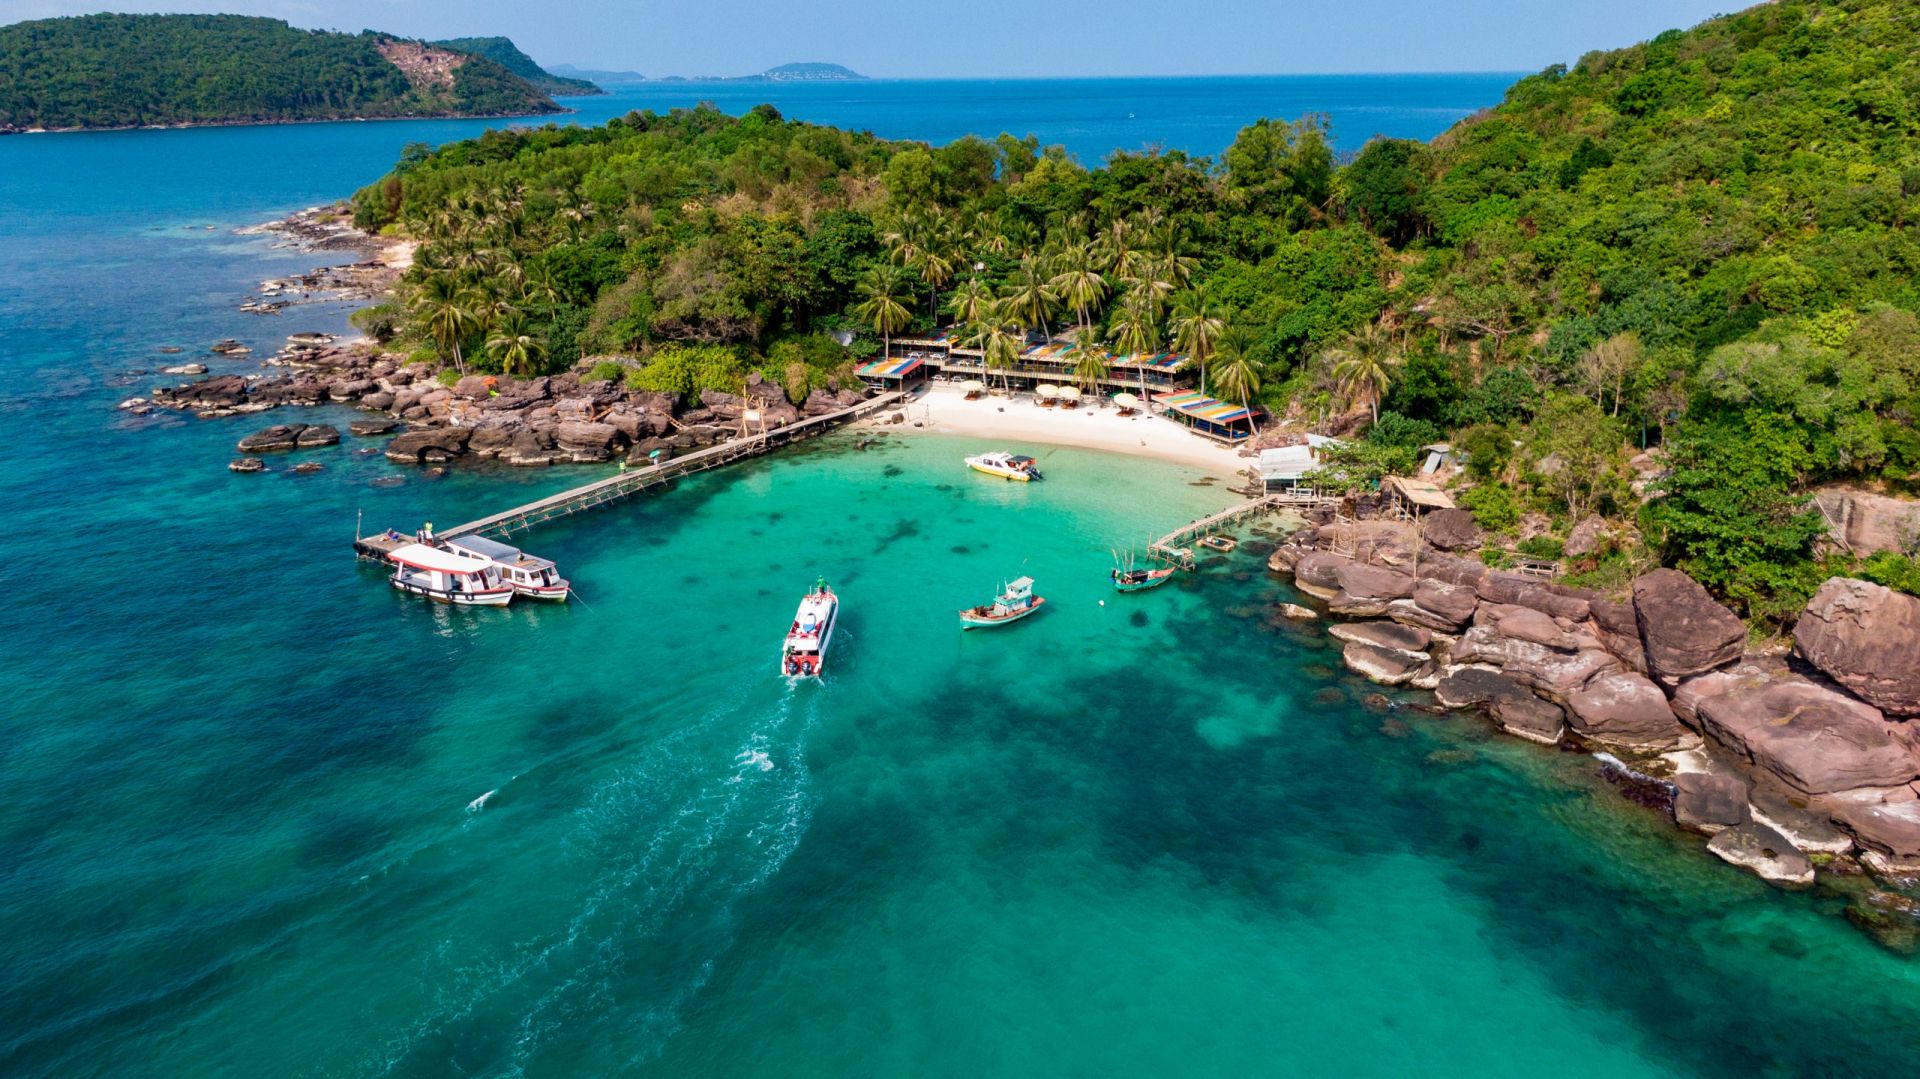 Đảo Hòn Thơm nổi tiếng bởi vẻ đẹp nguyên sơ